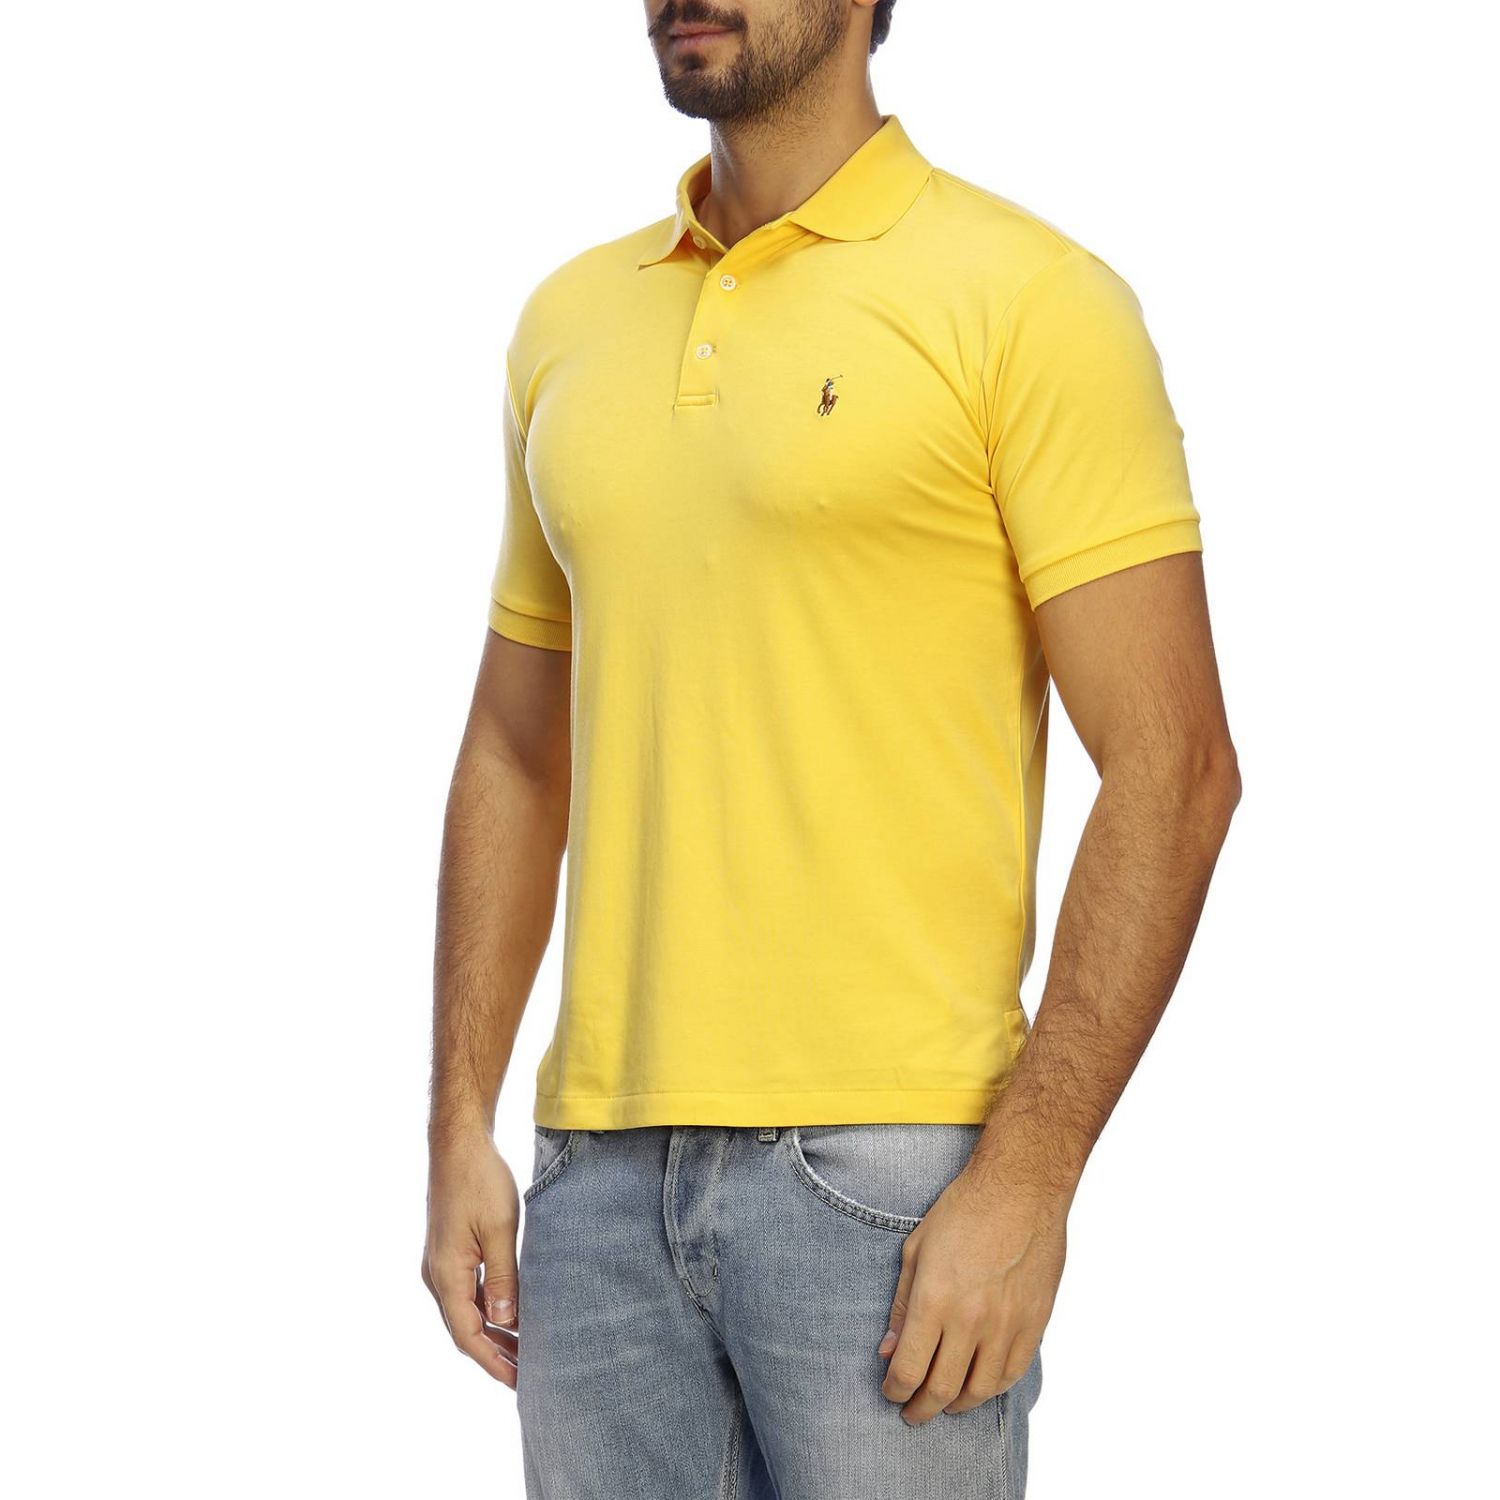 Polo Ralph Lauren Outlet: T-shirt men - Yellow | T-Shirt Polo Ralph ...